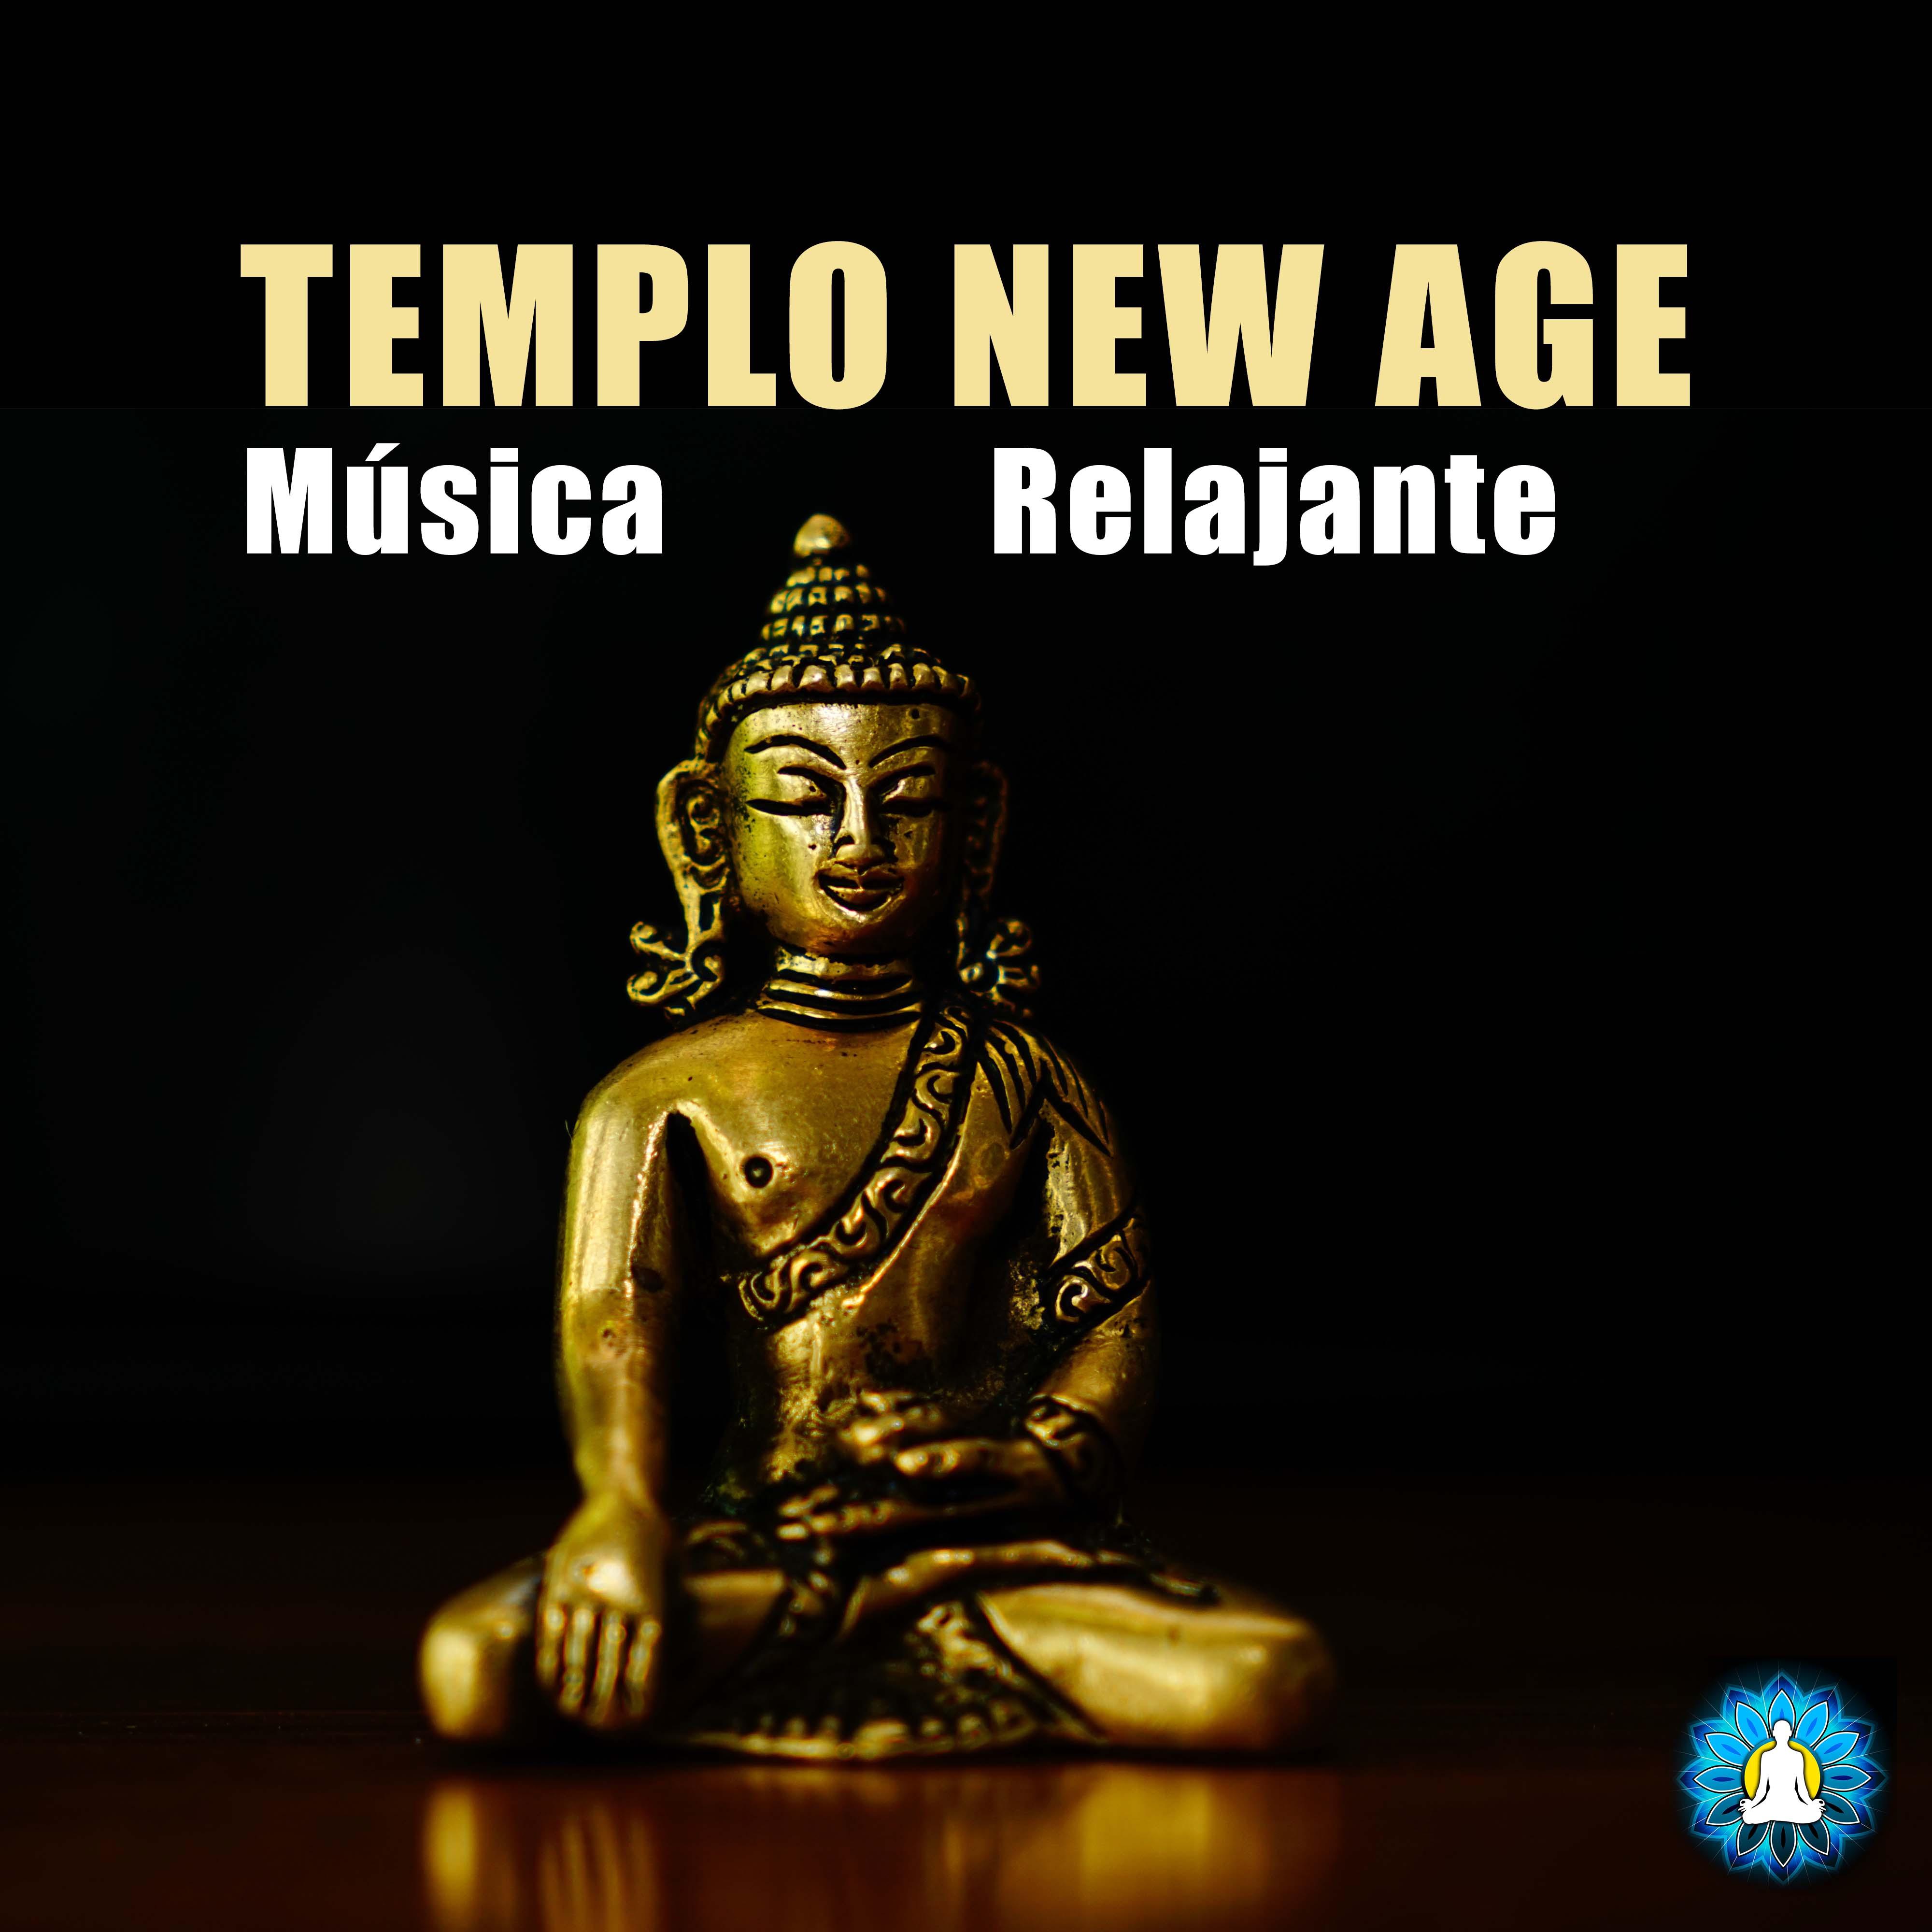 Templo New Age - Musica Relajante